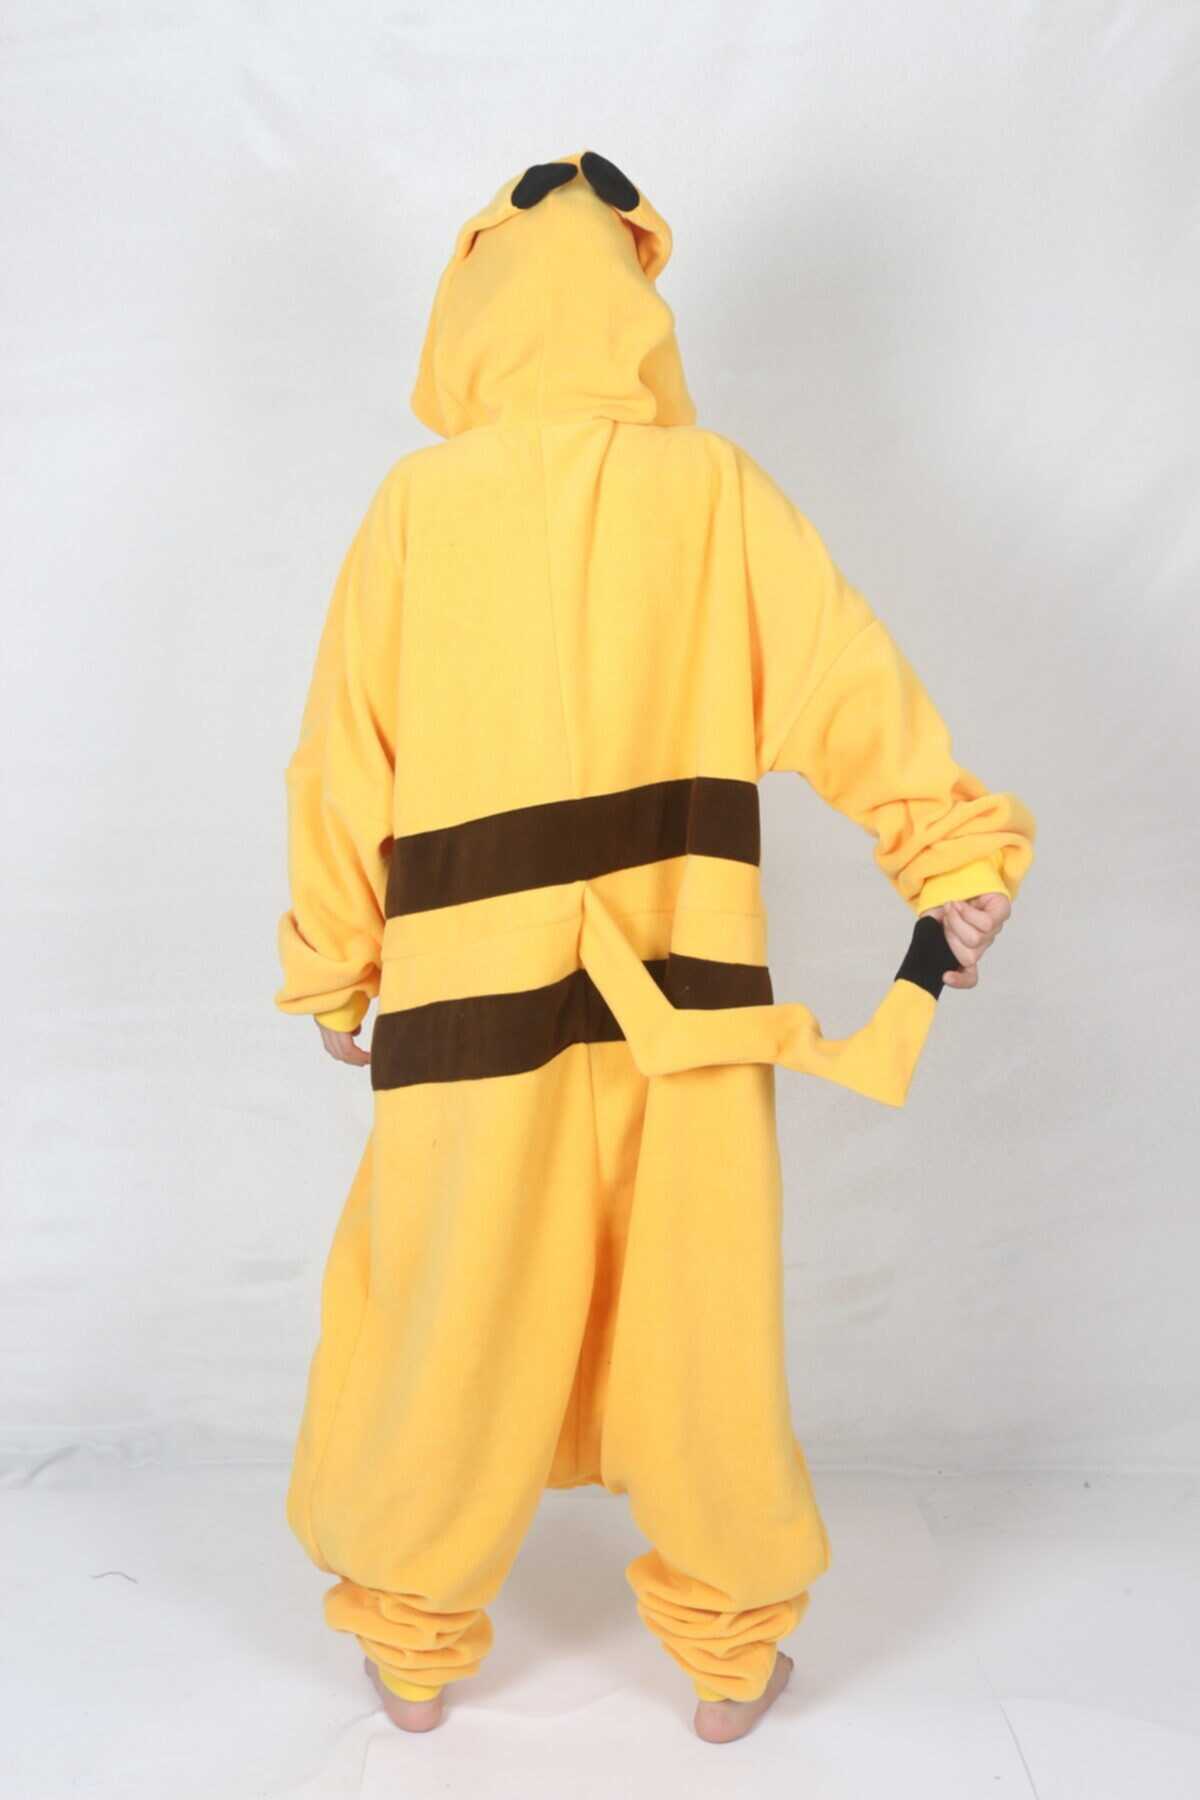 لباس فان مردانه مدل کیگورومی پیکاچو زرد برند yüsü kostüm evi 